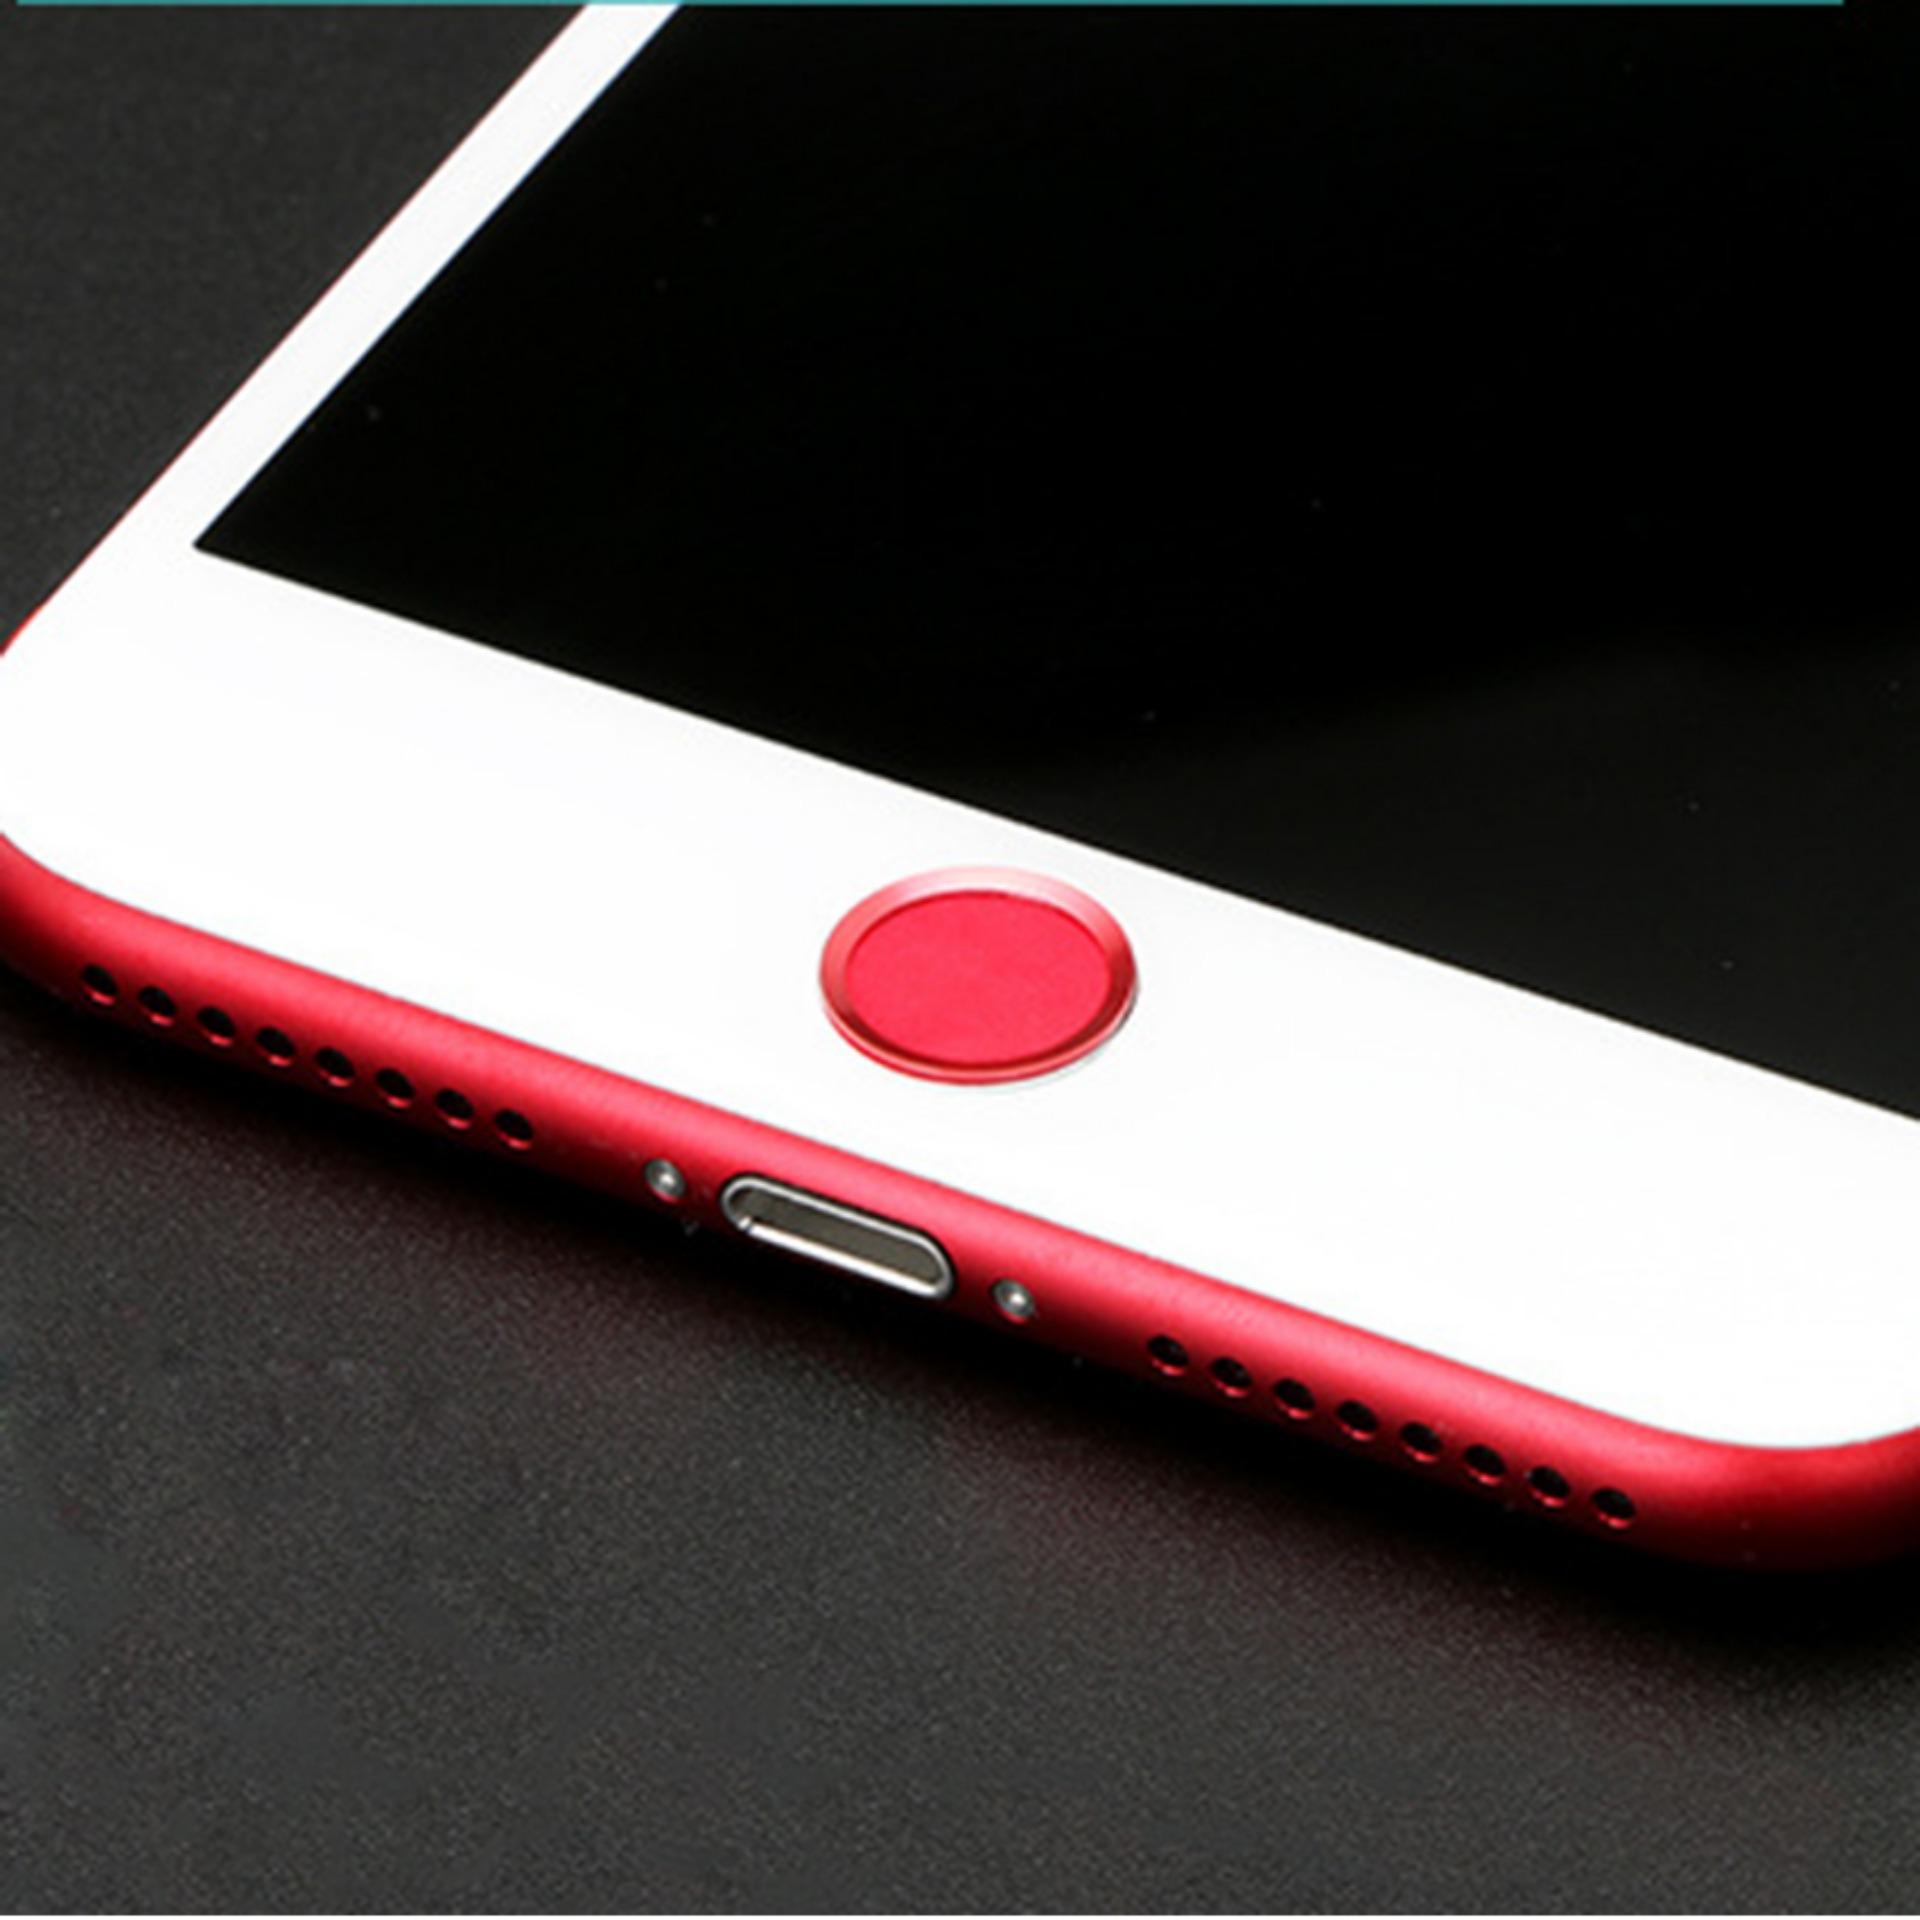 Nút Home cho iPhone 7 dùng được vân tay (Đỏ)